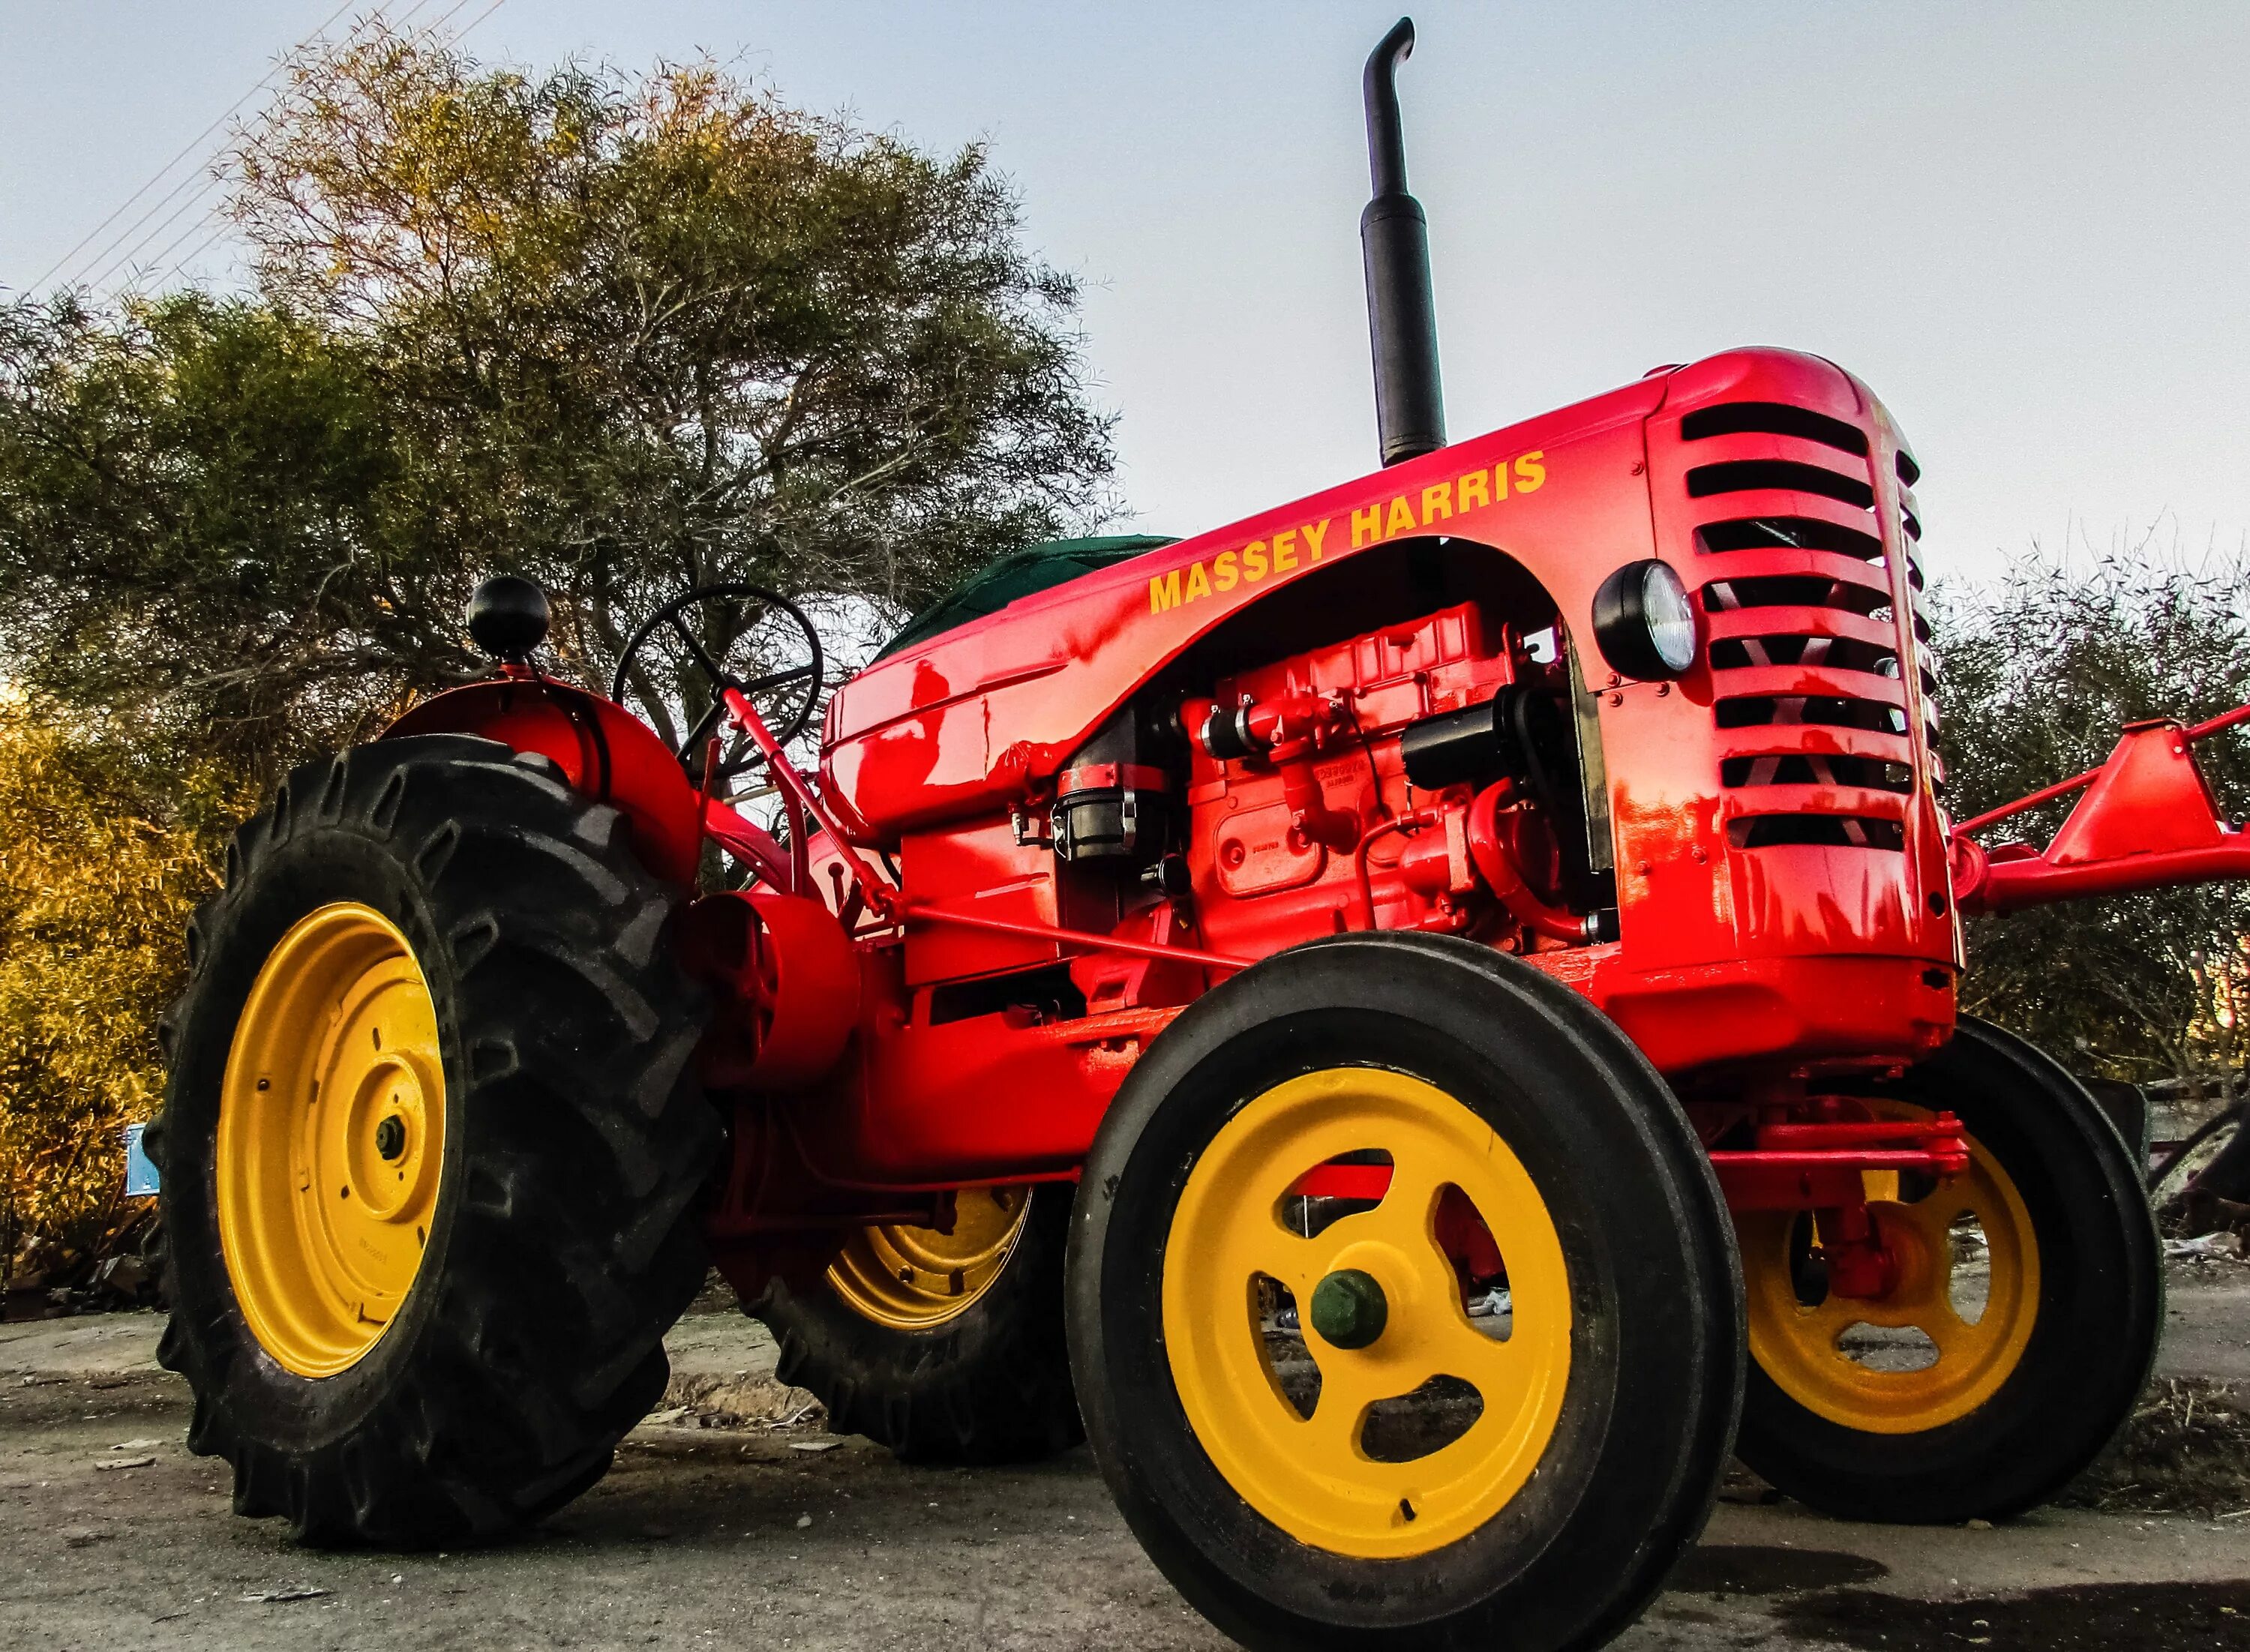 Авто тракторный. Трактор. Машины и тракторы. Американские трактора. Трактор красный трактор.